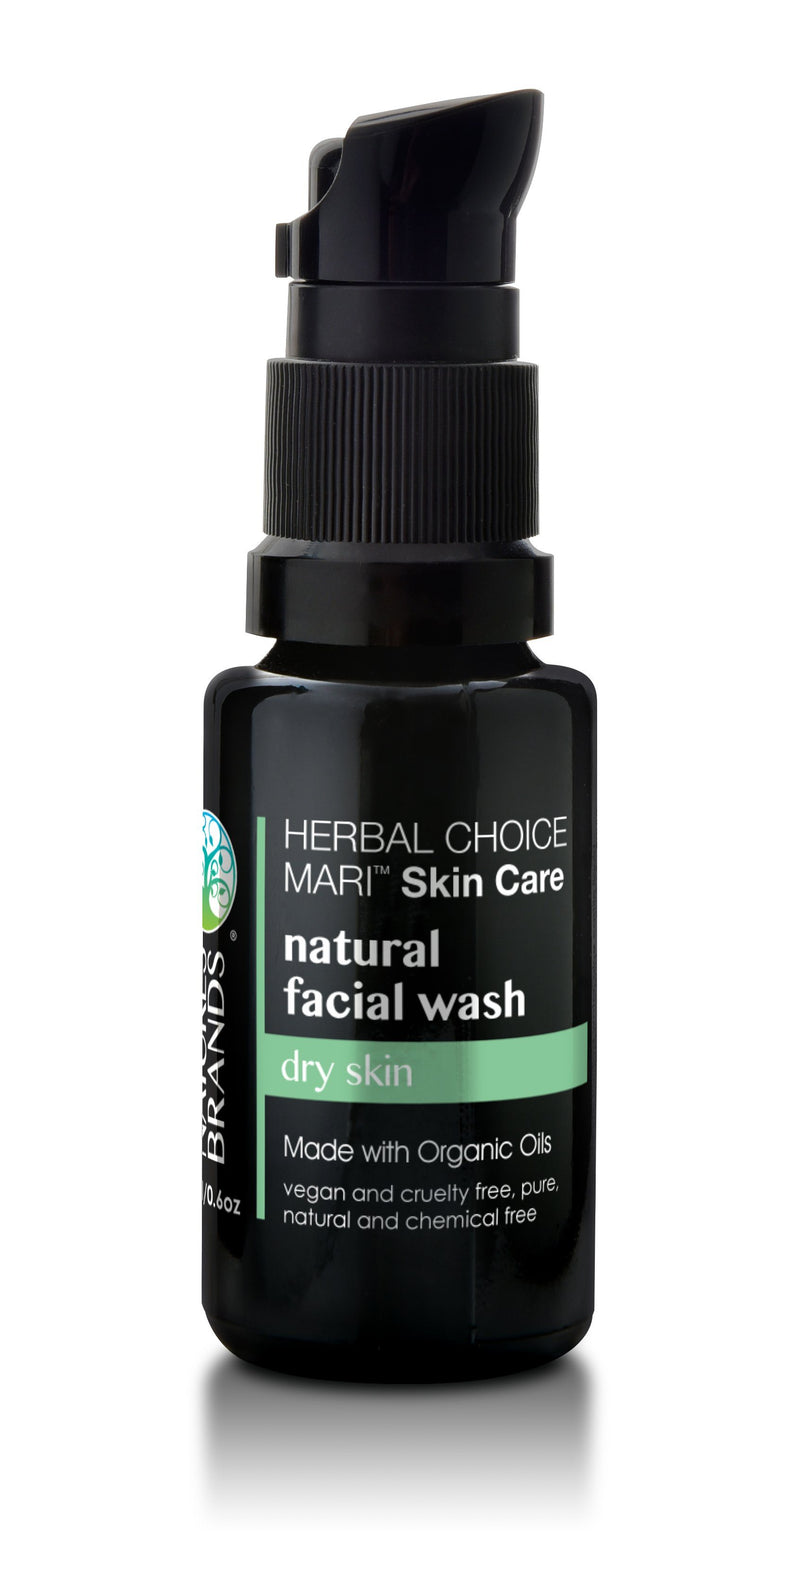 Herbal Choice Mari Natural Facial Wash; Made with Organic - Herbal Choice Mari Natural Facial Wash; Made with Organic - 0.5floz